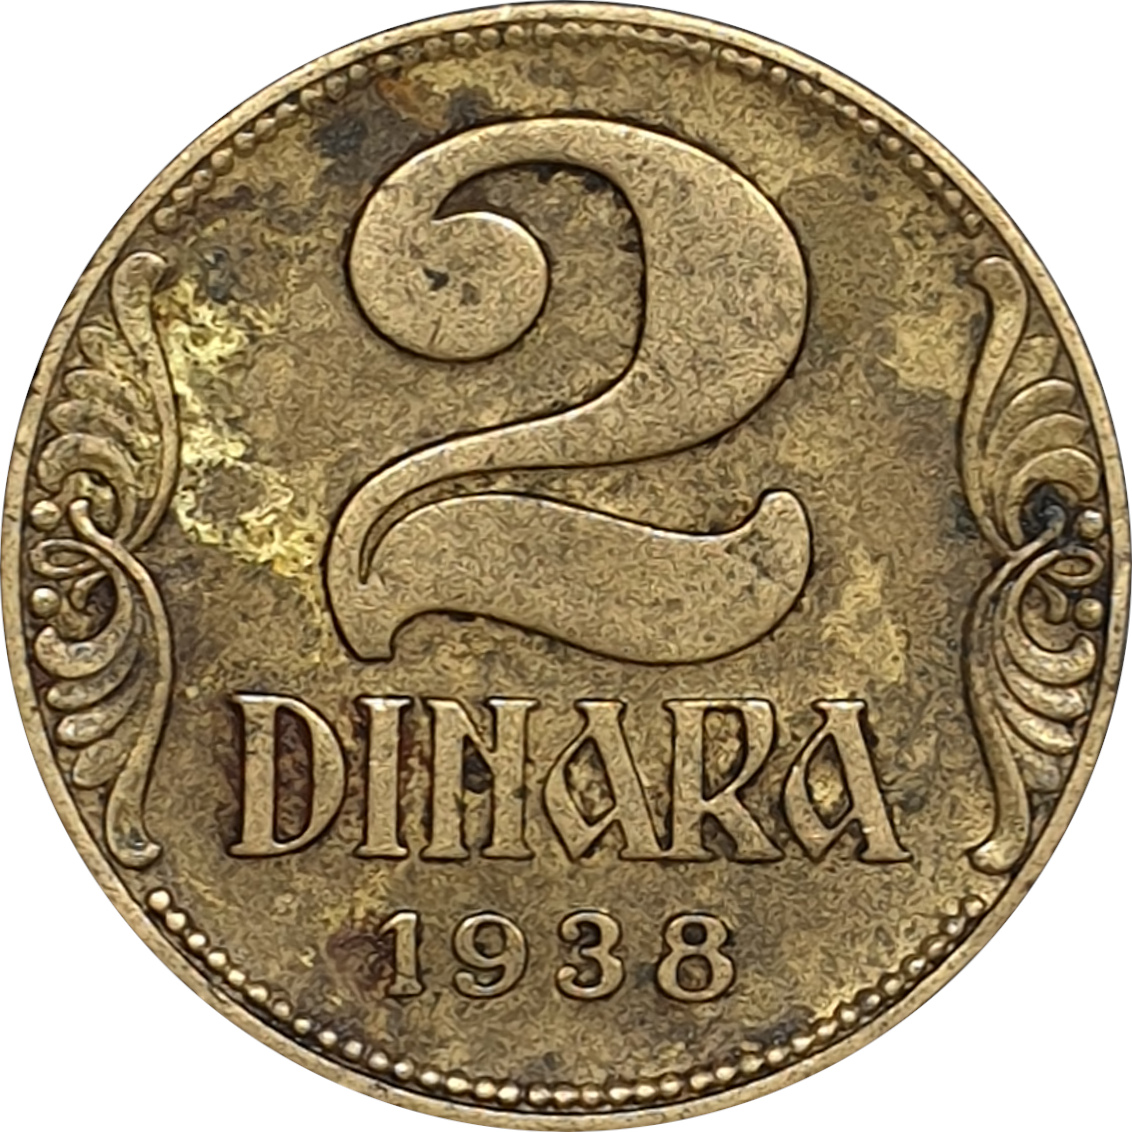 2 dinara - Crown - Large crown